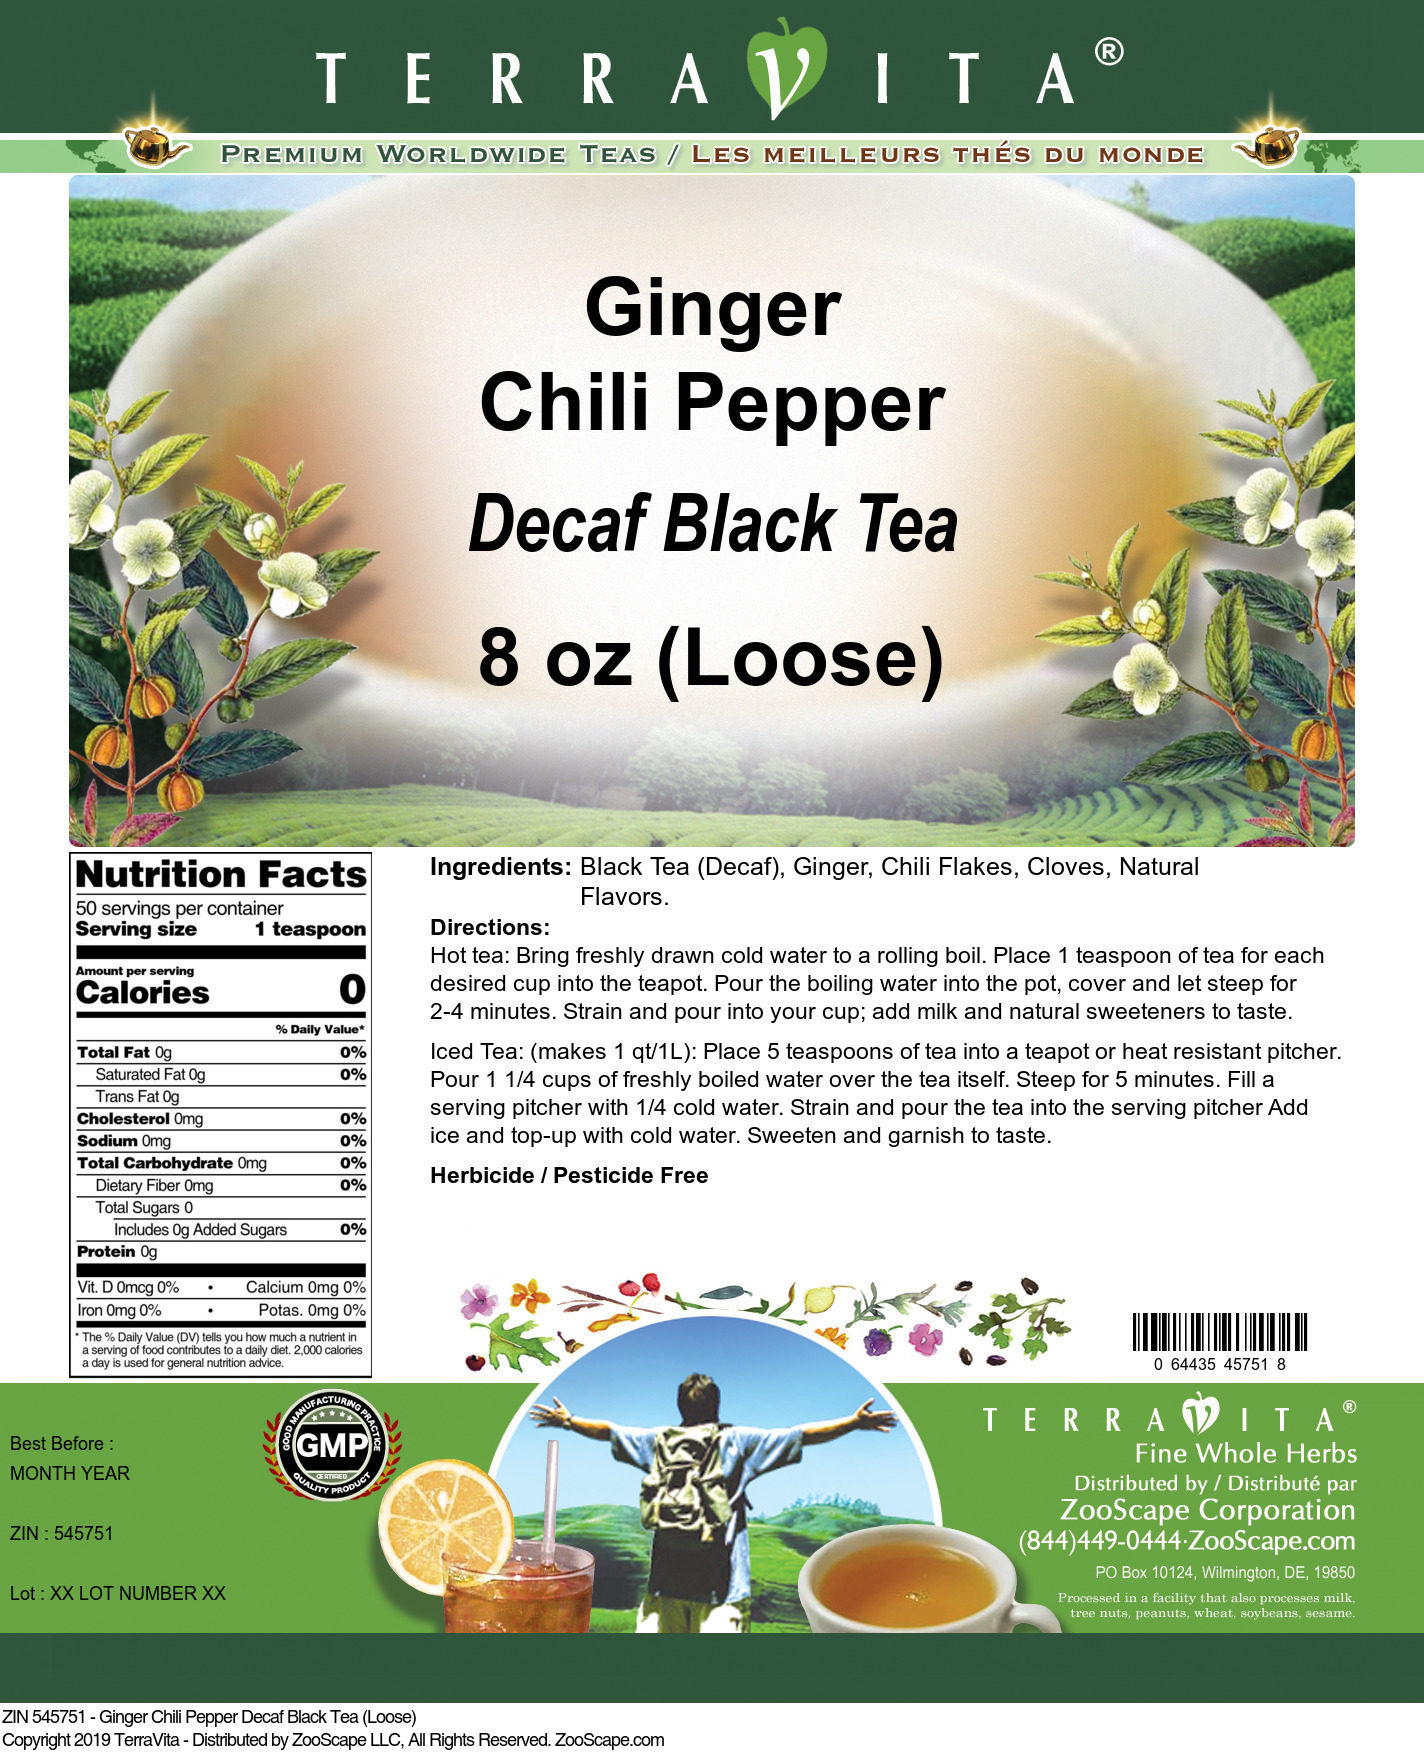 Ginger Chili Pepper Decaf Black Tea (Loose) - Label